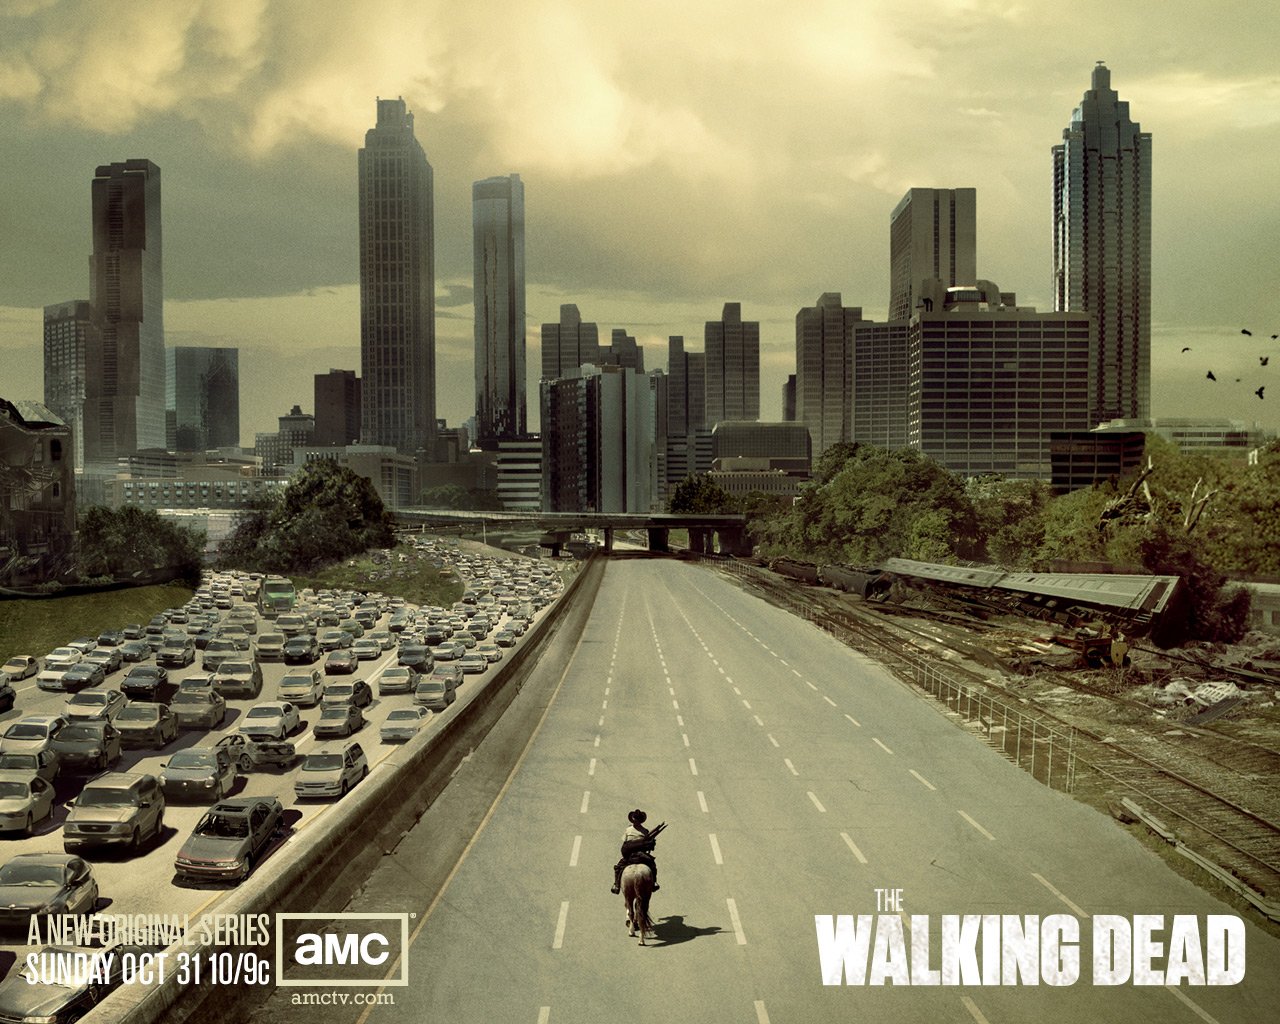  tv showThe Walking Deadthe walking dead wallpaper 1280x1024 1jpg 1280x1024